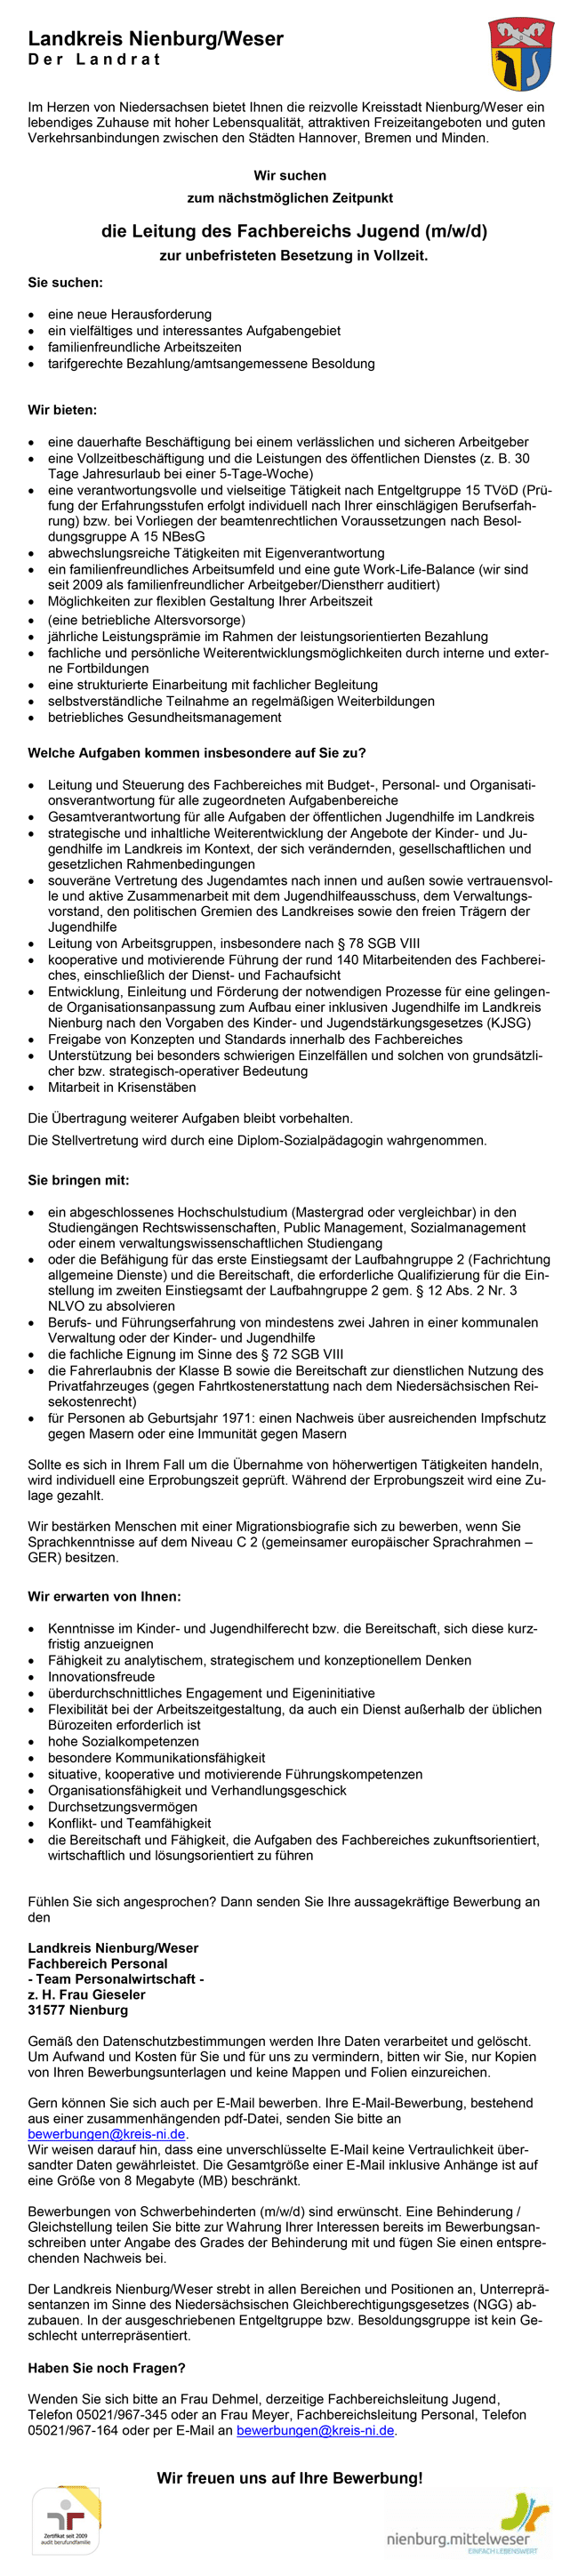 Landkreis Nienburg/Weser Leitung des Fachbereichs Jugend stellecompass.de